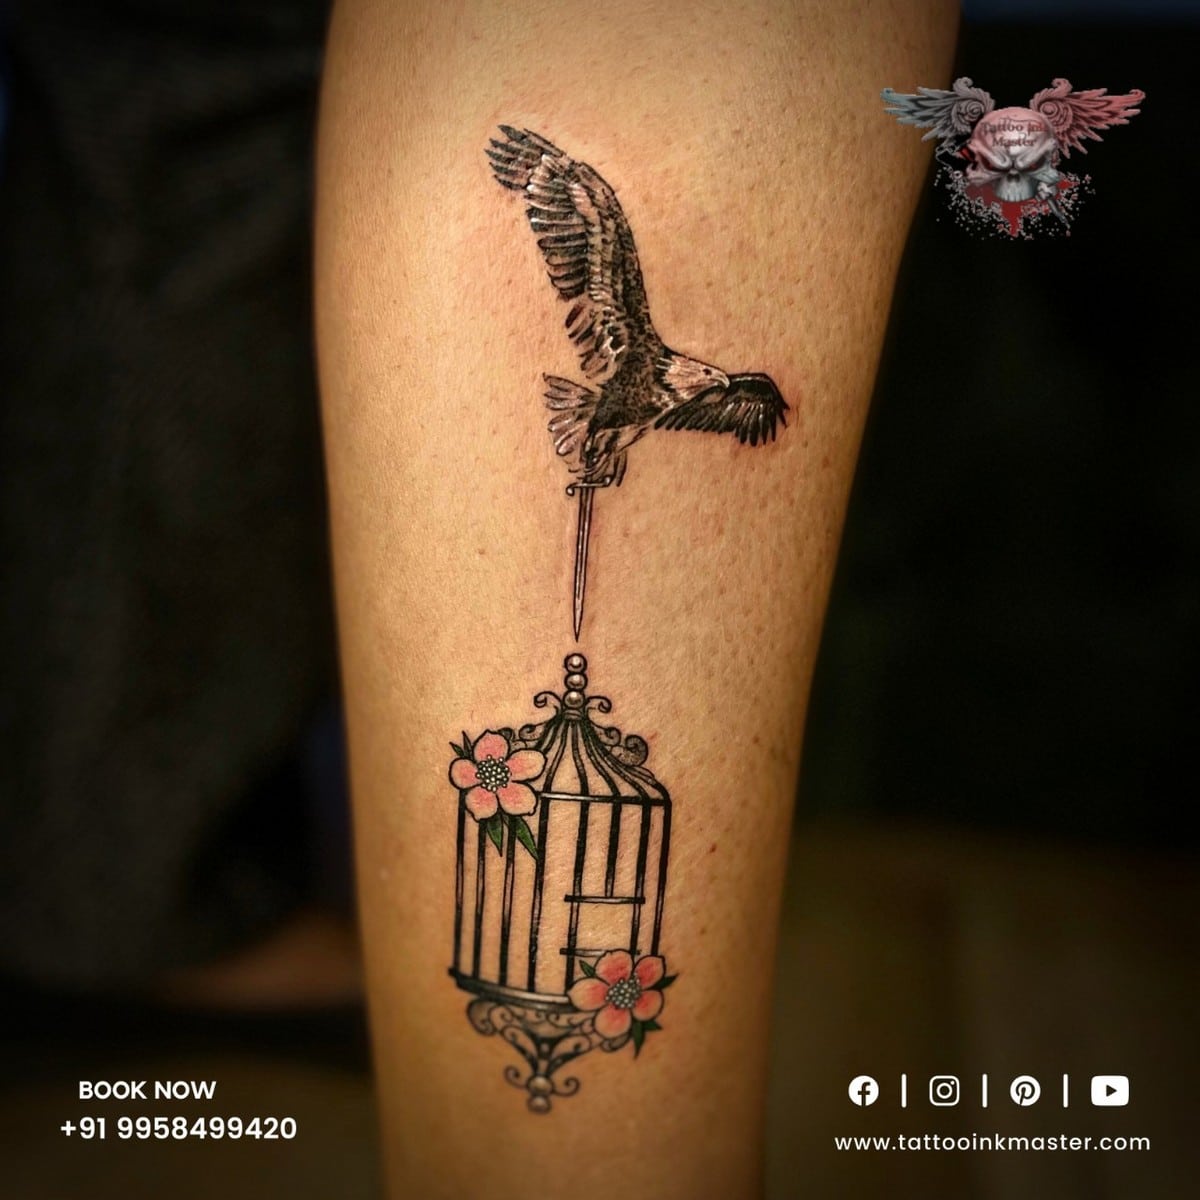 Sparrow vs. Swallow Tattoo - Tattoo Design